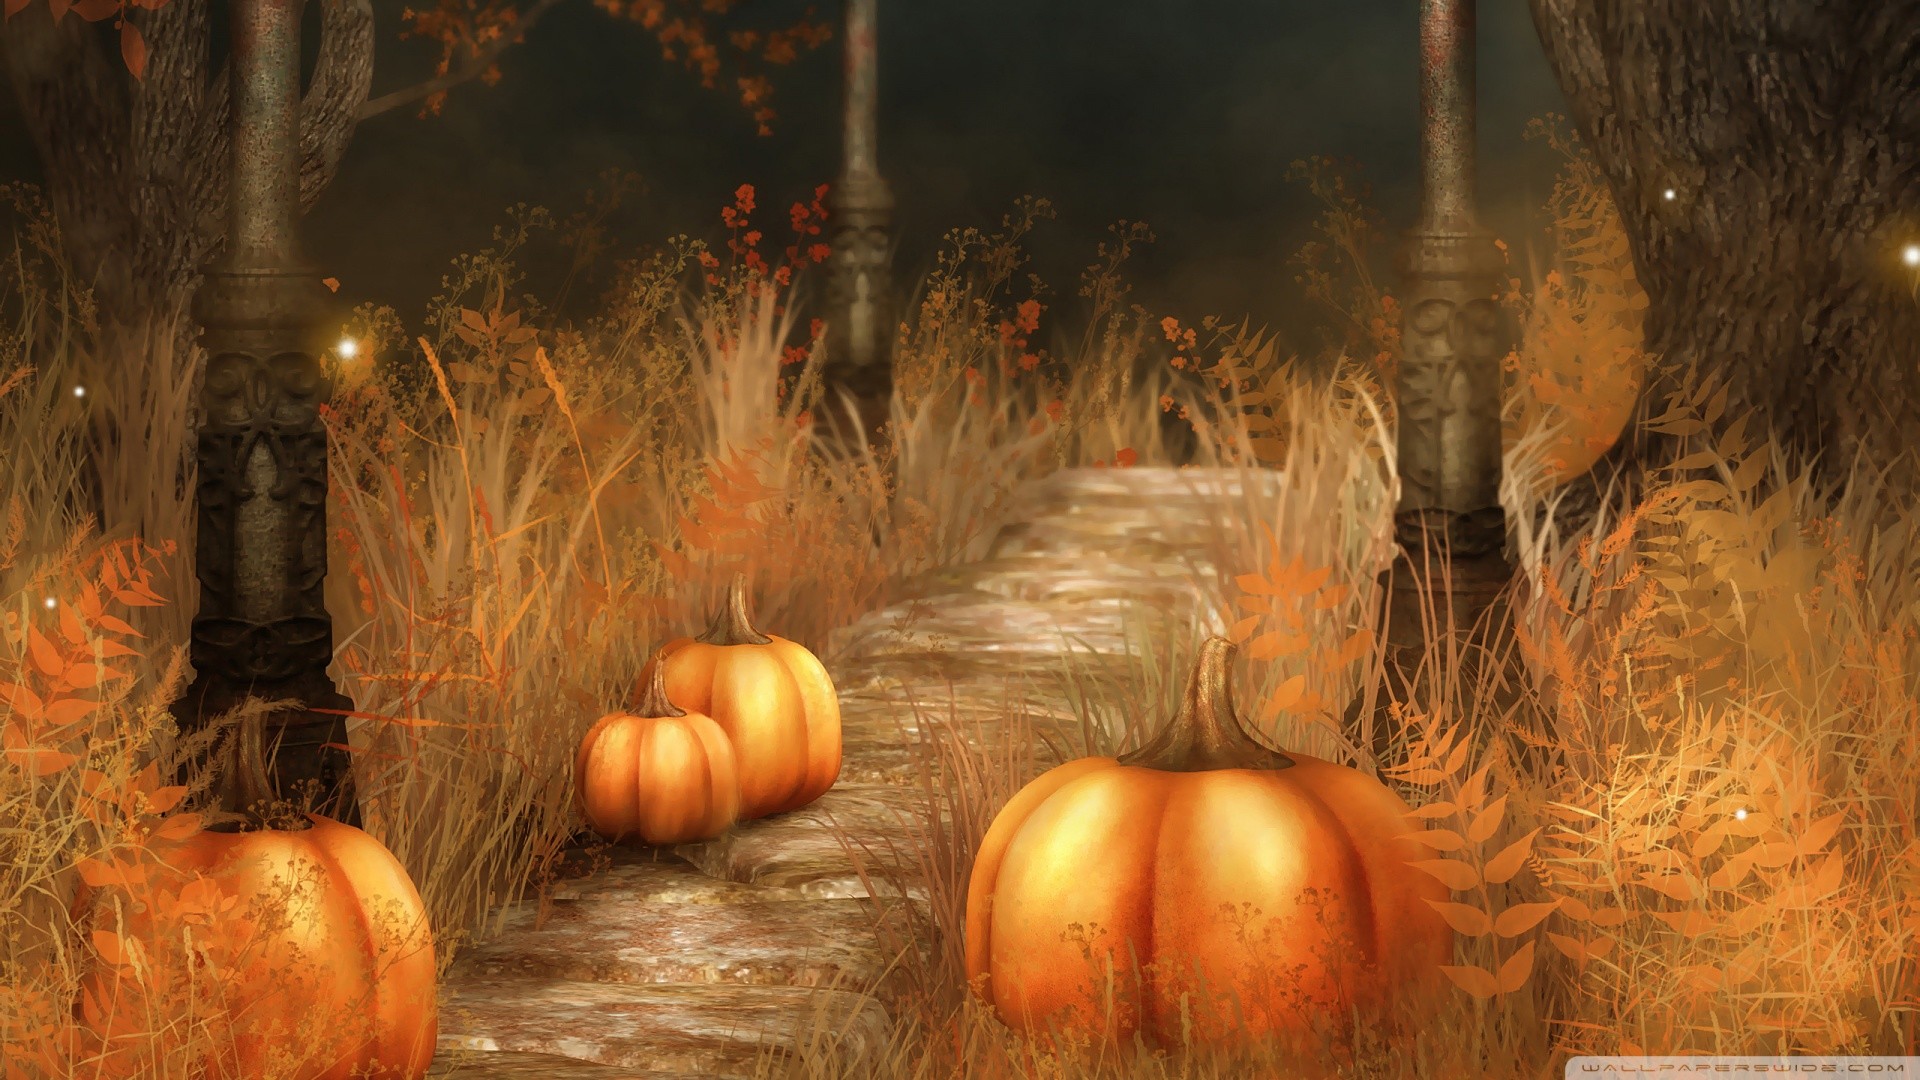 1920x1080 Cute Fall Pumpkins Wallpaper | Pumpkins Halloween Wallpaper Free Download